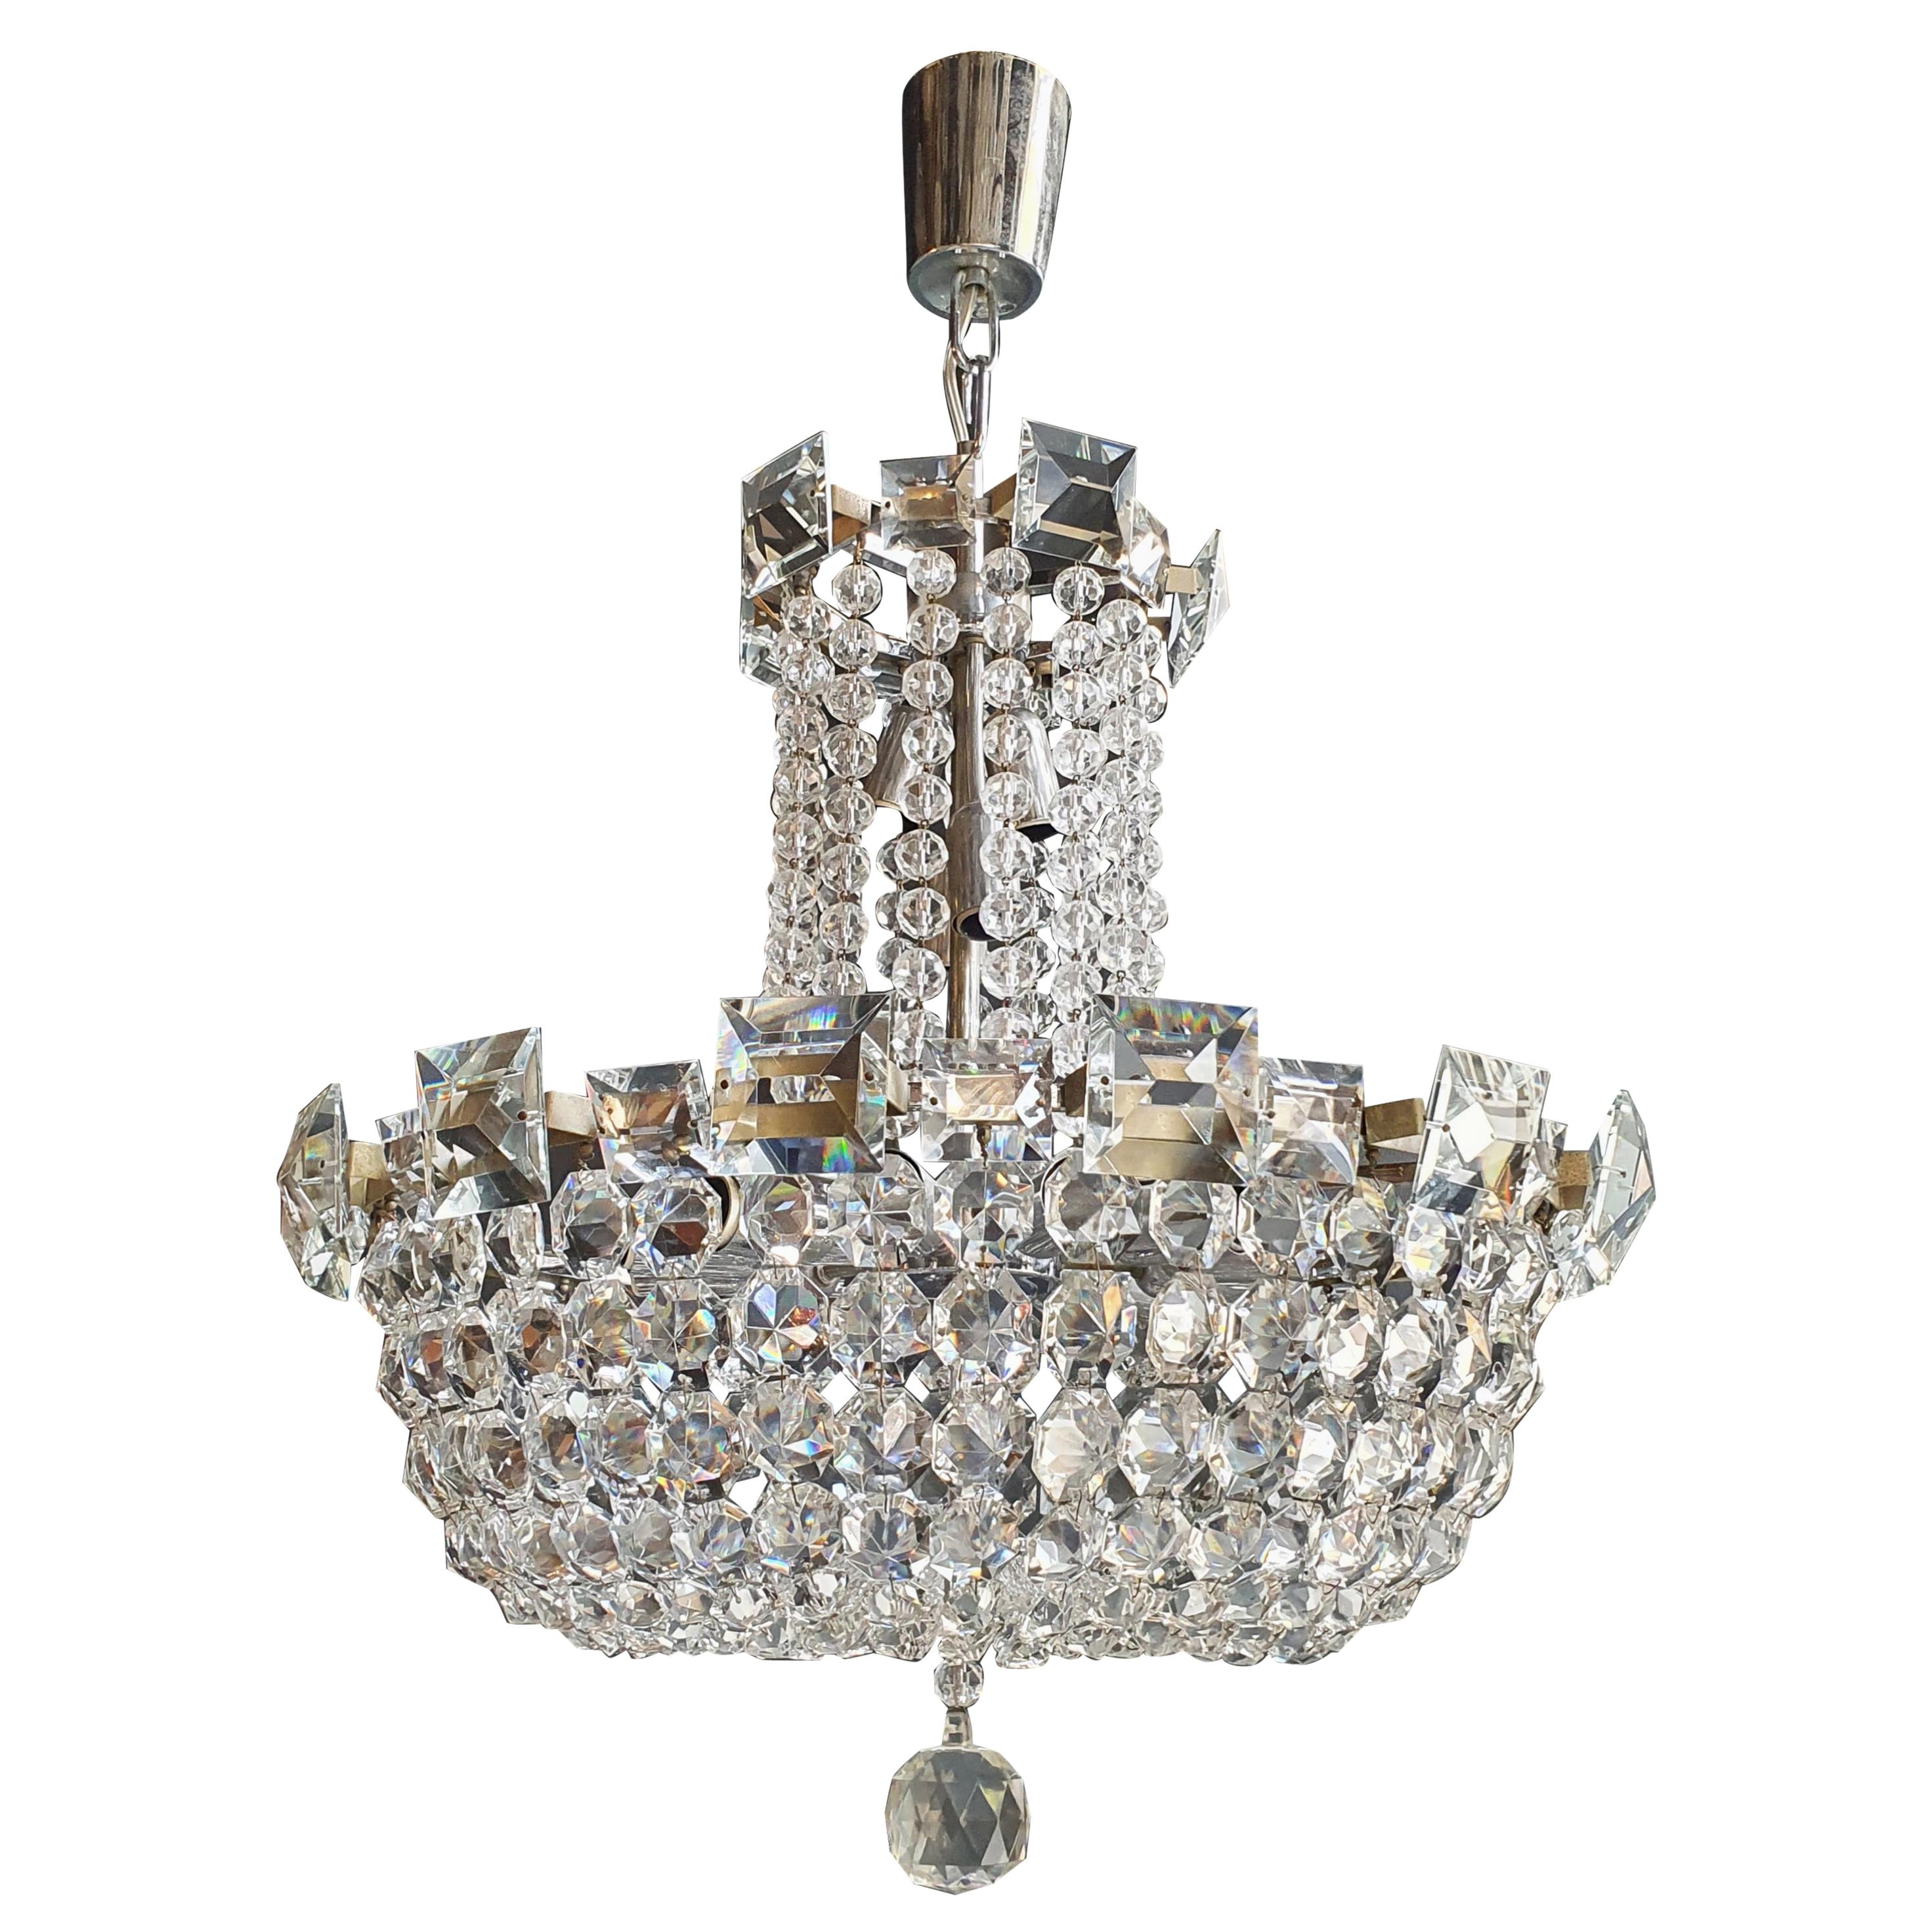 Basket Silver Modern Art Deco Chandelier Crystal Lustre Ceiling Lamp Antique